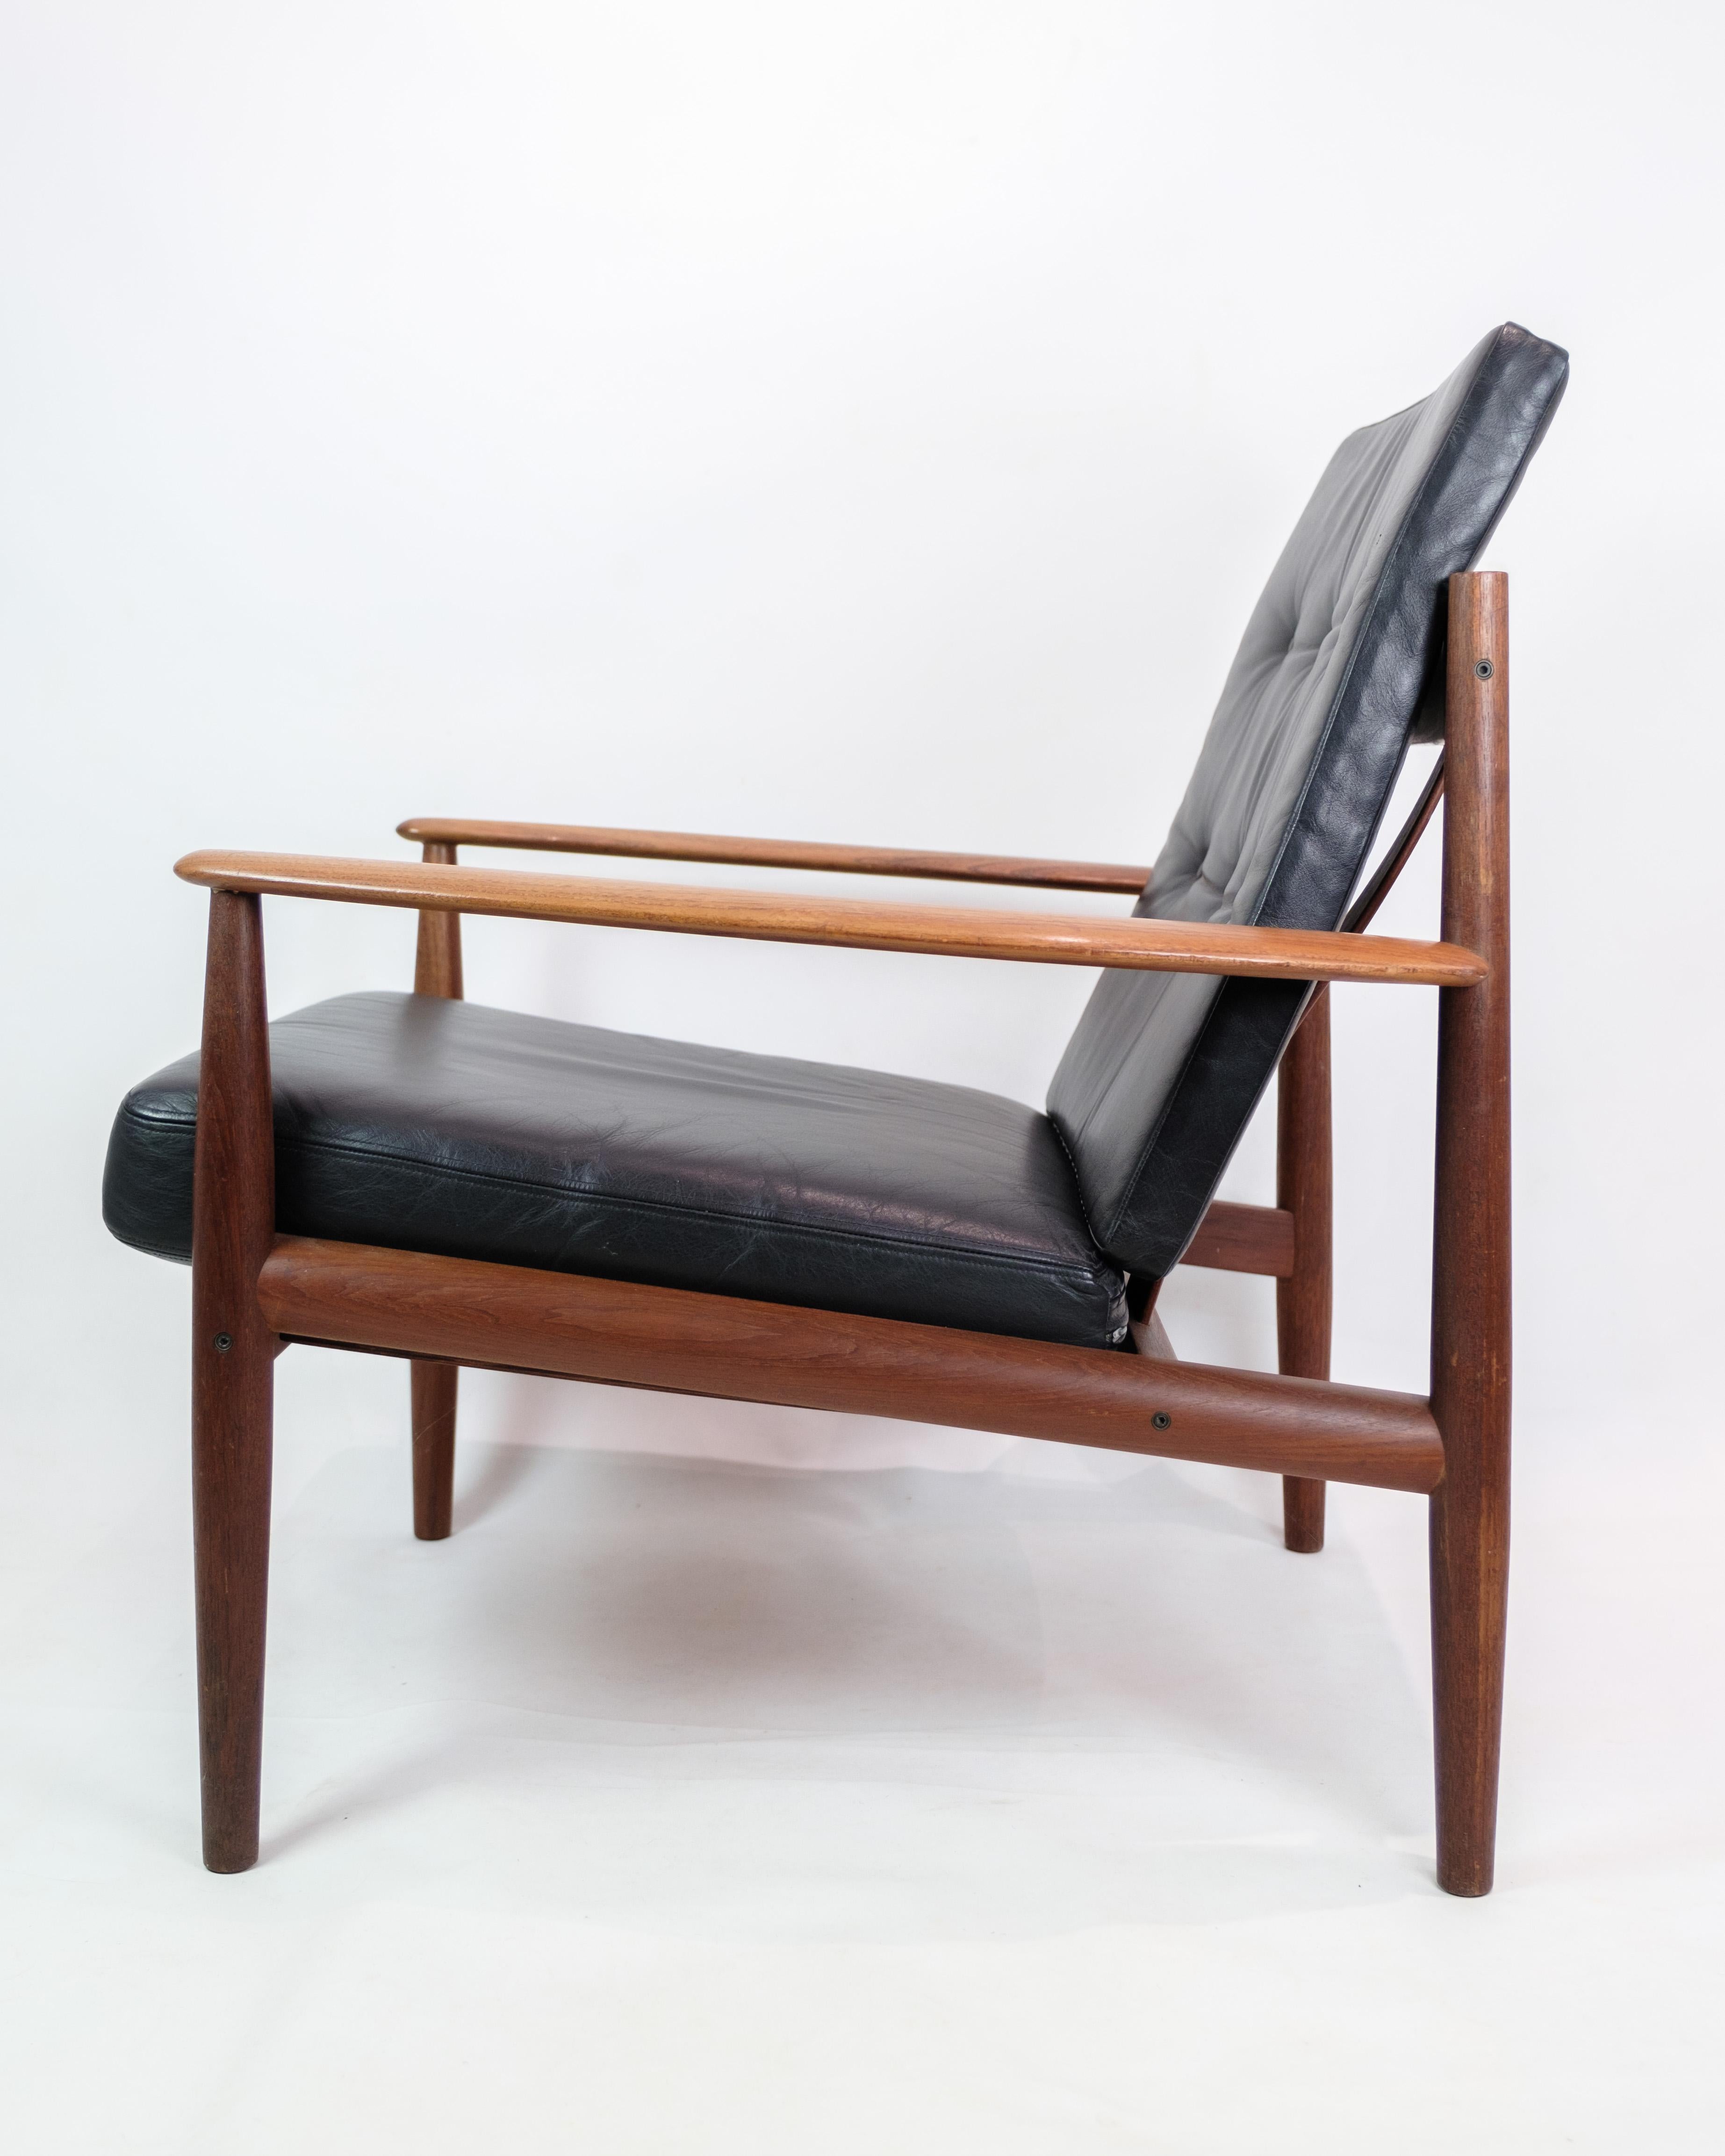 Genießen Sie ein raffiniertes Liegeerlebnis mit diesem Sessel, Modell 118, entworfen von der talentierten Grete Jalk und hergestellt von France & Son in den 1960er Jahren. Dieser aus Teakholz und elegantem schwarzem Leder gefertigte Stuhl ist ein